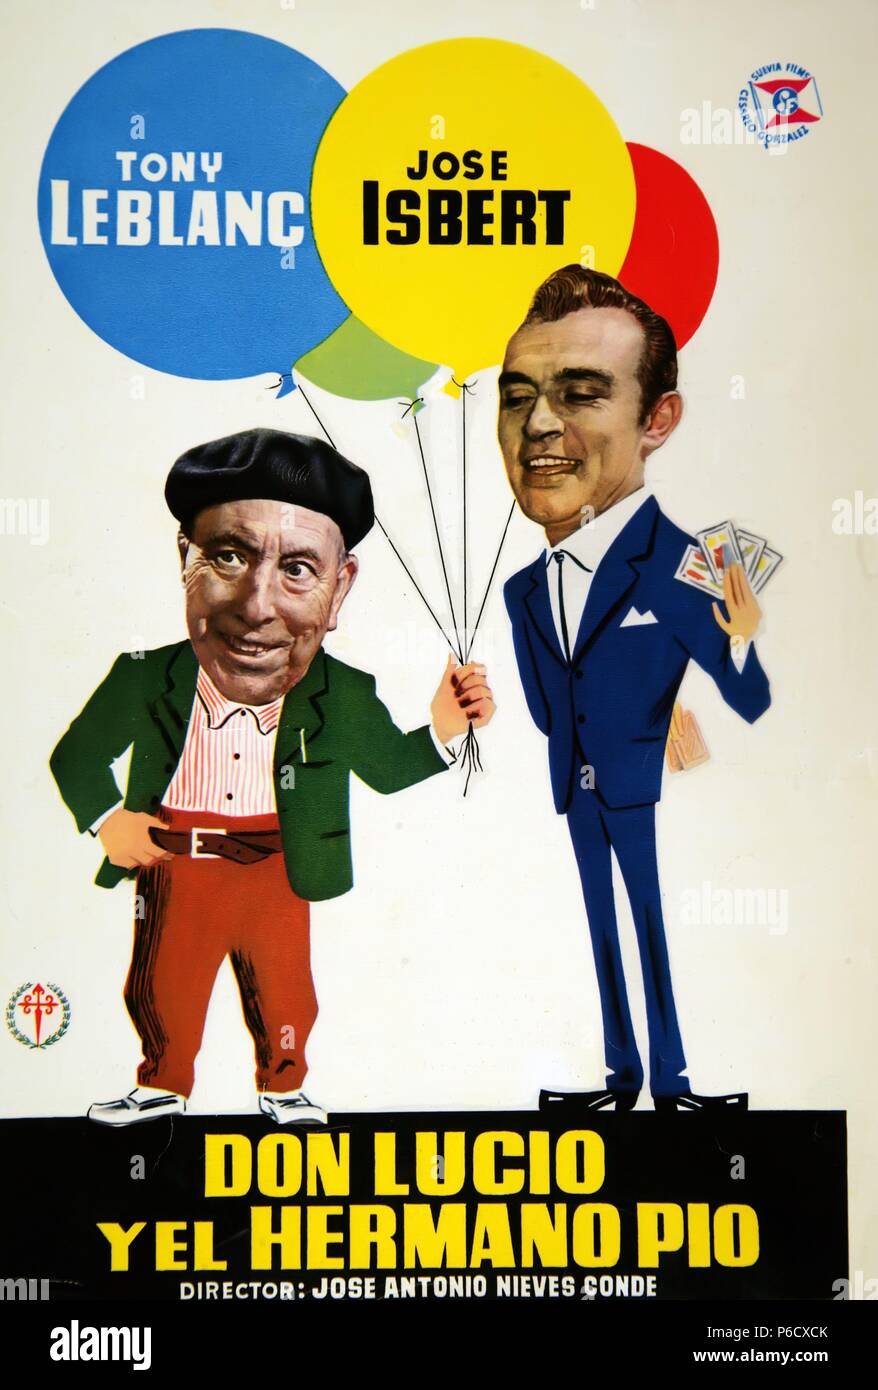 PELICULA : DON LUCIO Y EL HERMANO PIO , 1960. DIRECTOR : JOSE ANTONIO NIEVES CONDE. ACTORES : TONY LEBLANC , JOSE ISBERT. Stock Photo